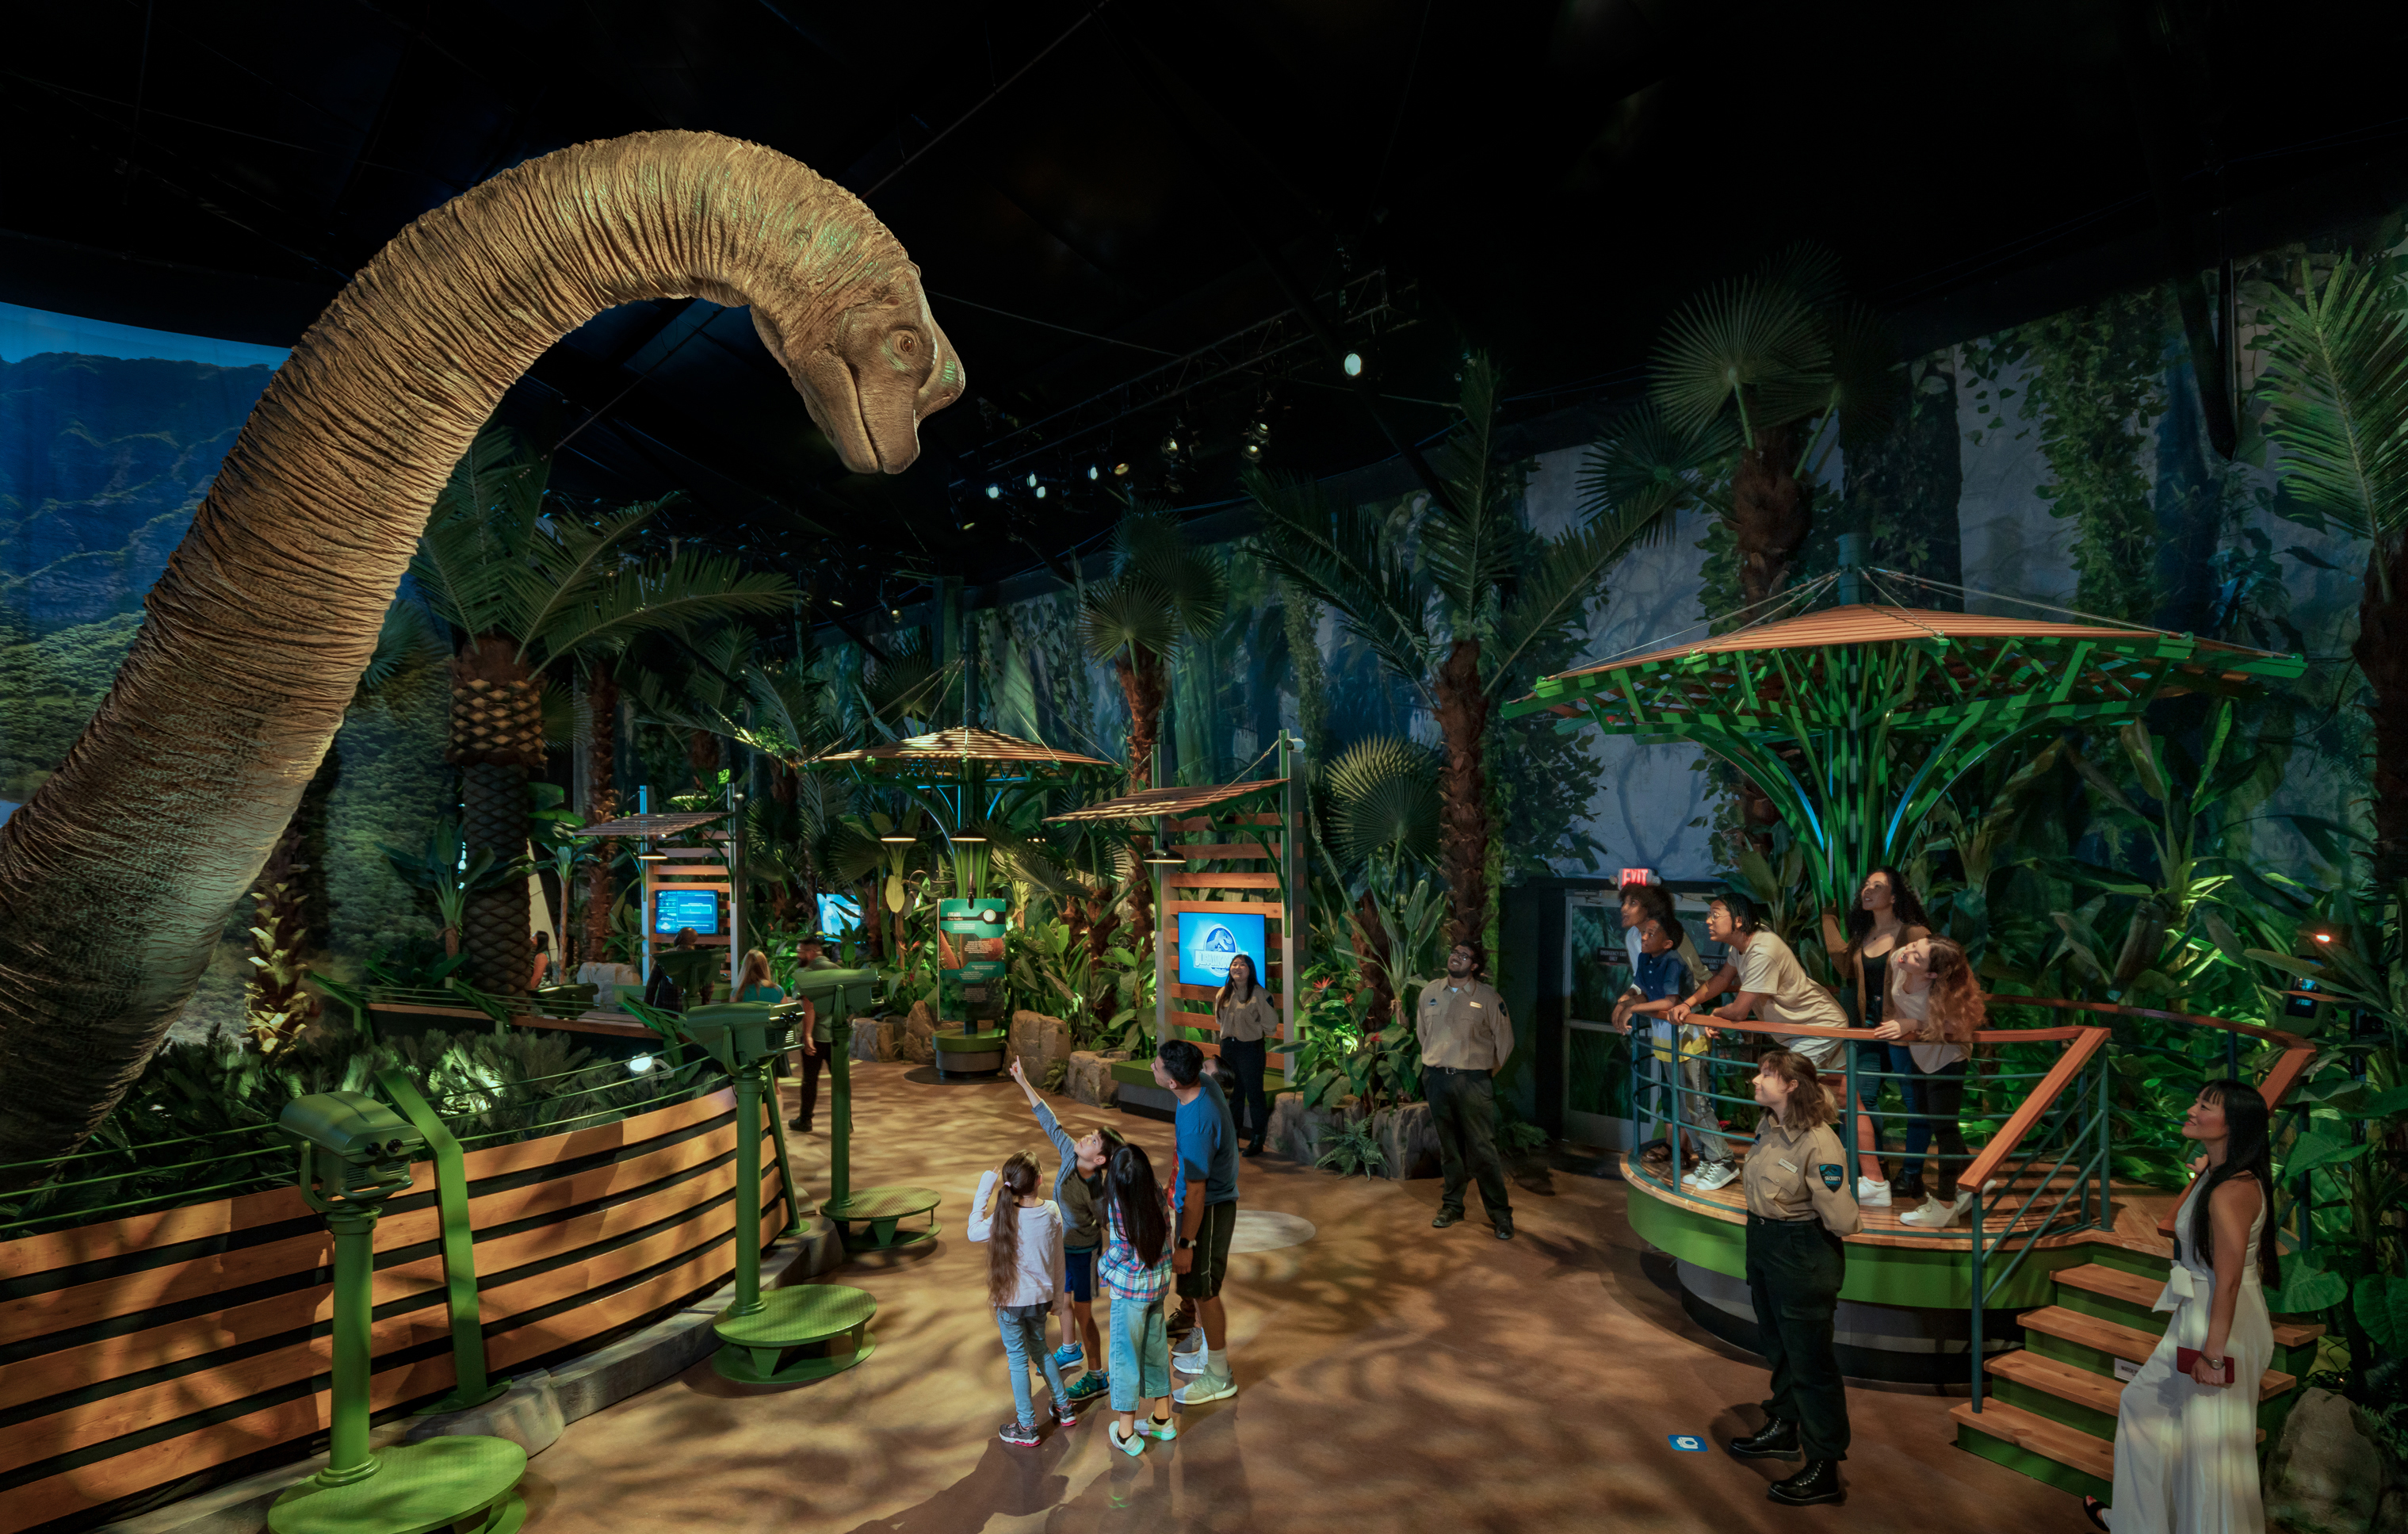 Jurassic world: the exhibition, Guardar 66% trato generoso